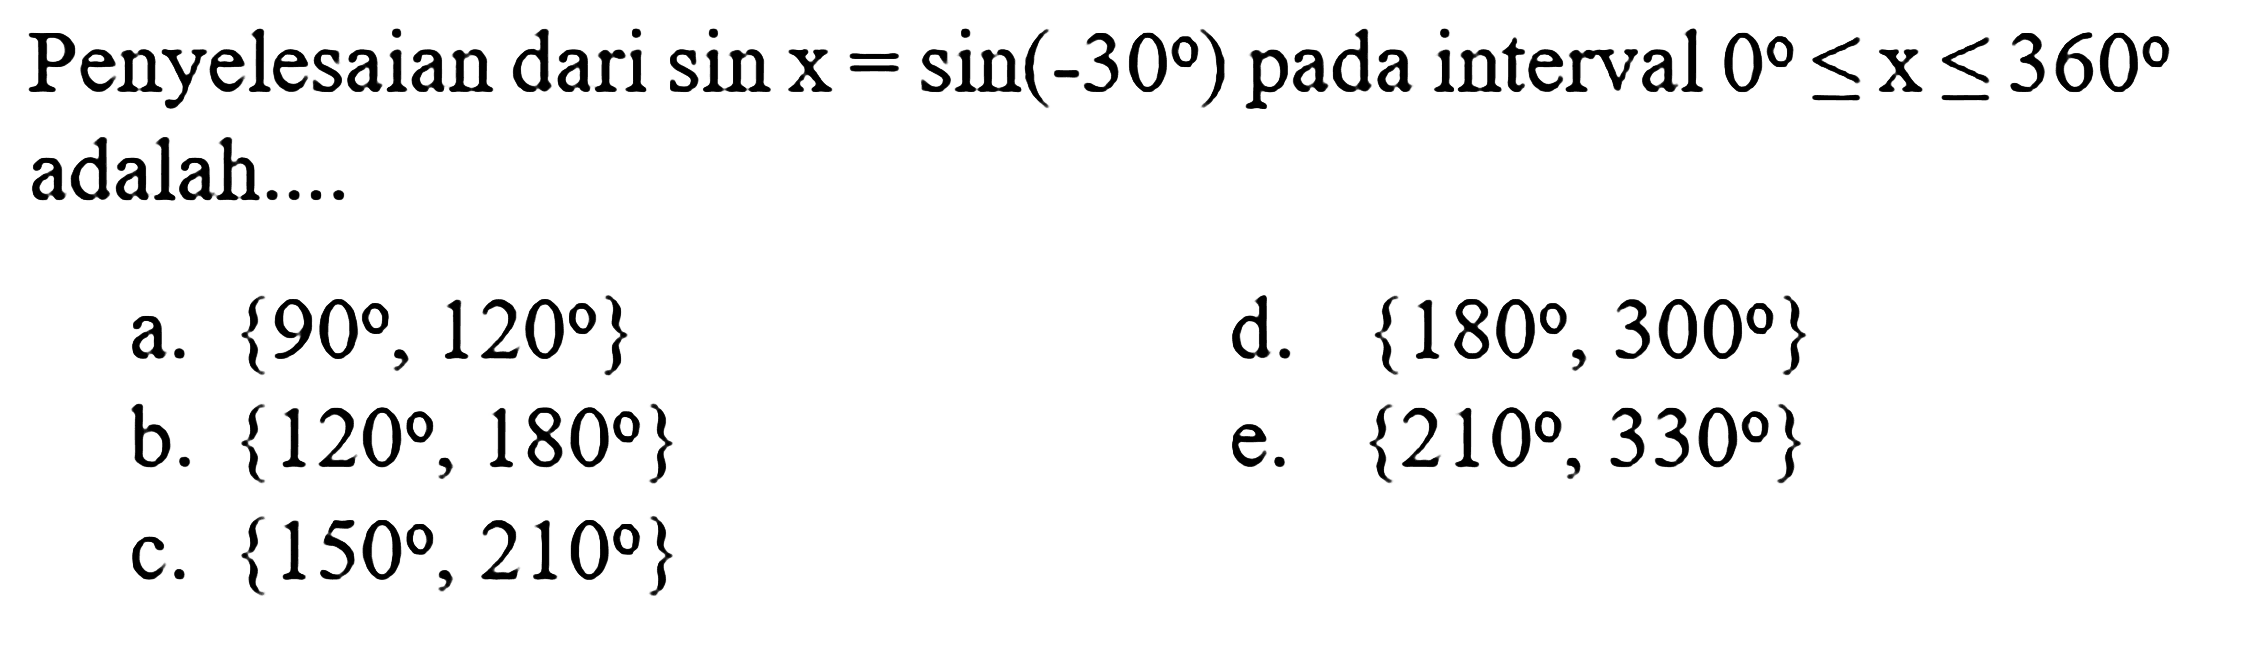 Penyelesaian dari sin x = sin(-30) pada interval 0<=x<=360 adalah....